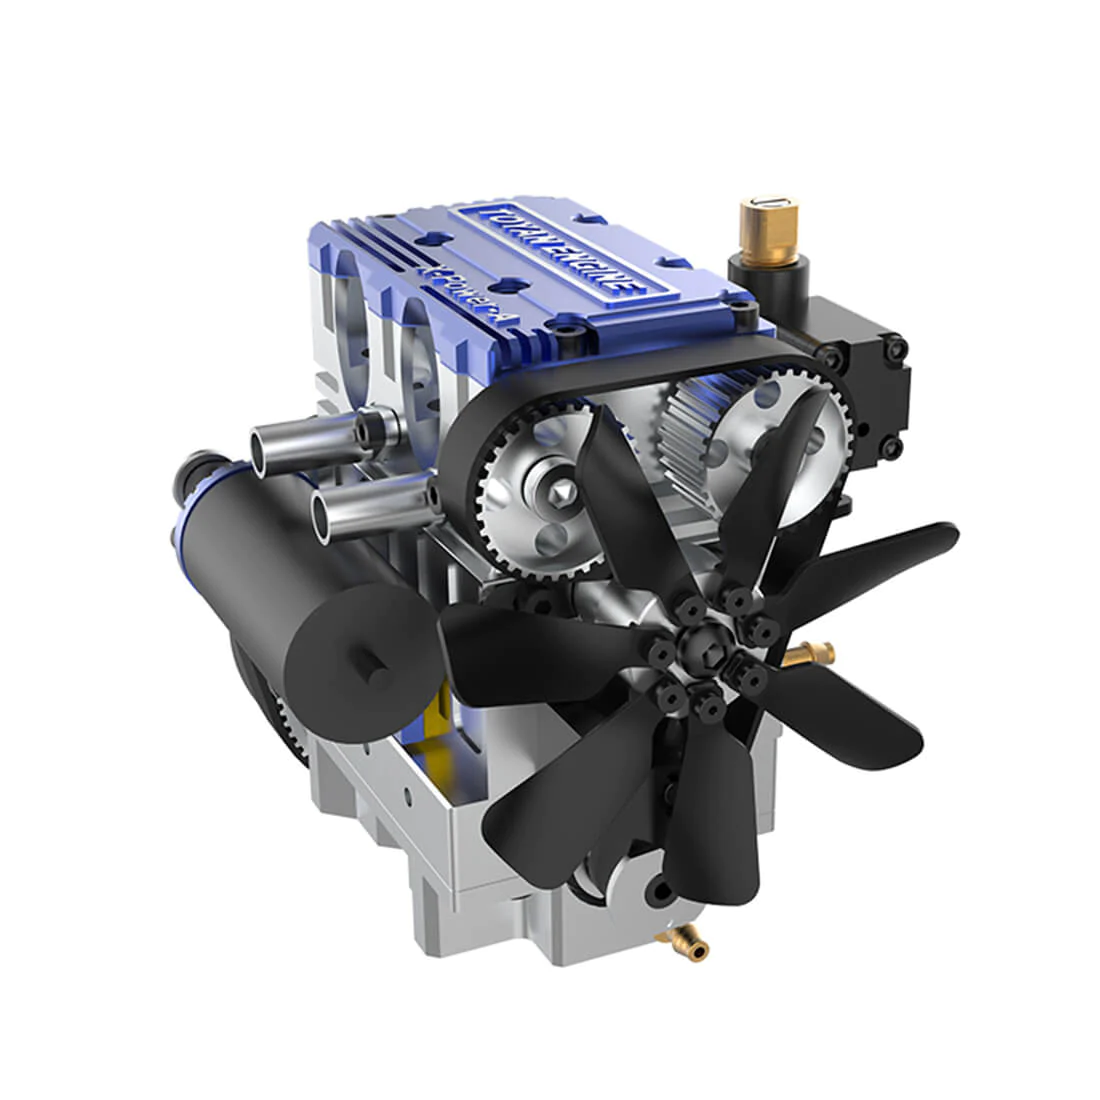 Toyan X-Power 2-Cylinder 4-Stroke Kit DIY Build RC Car Engine FS-L200W -Blue 2